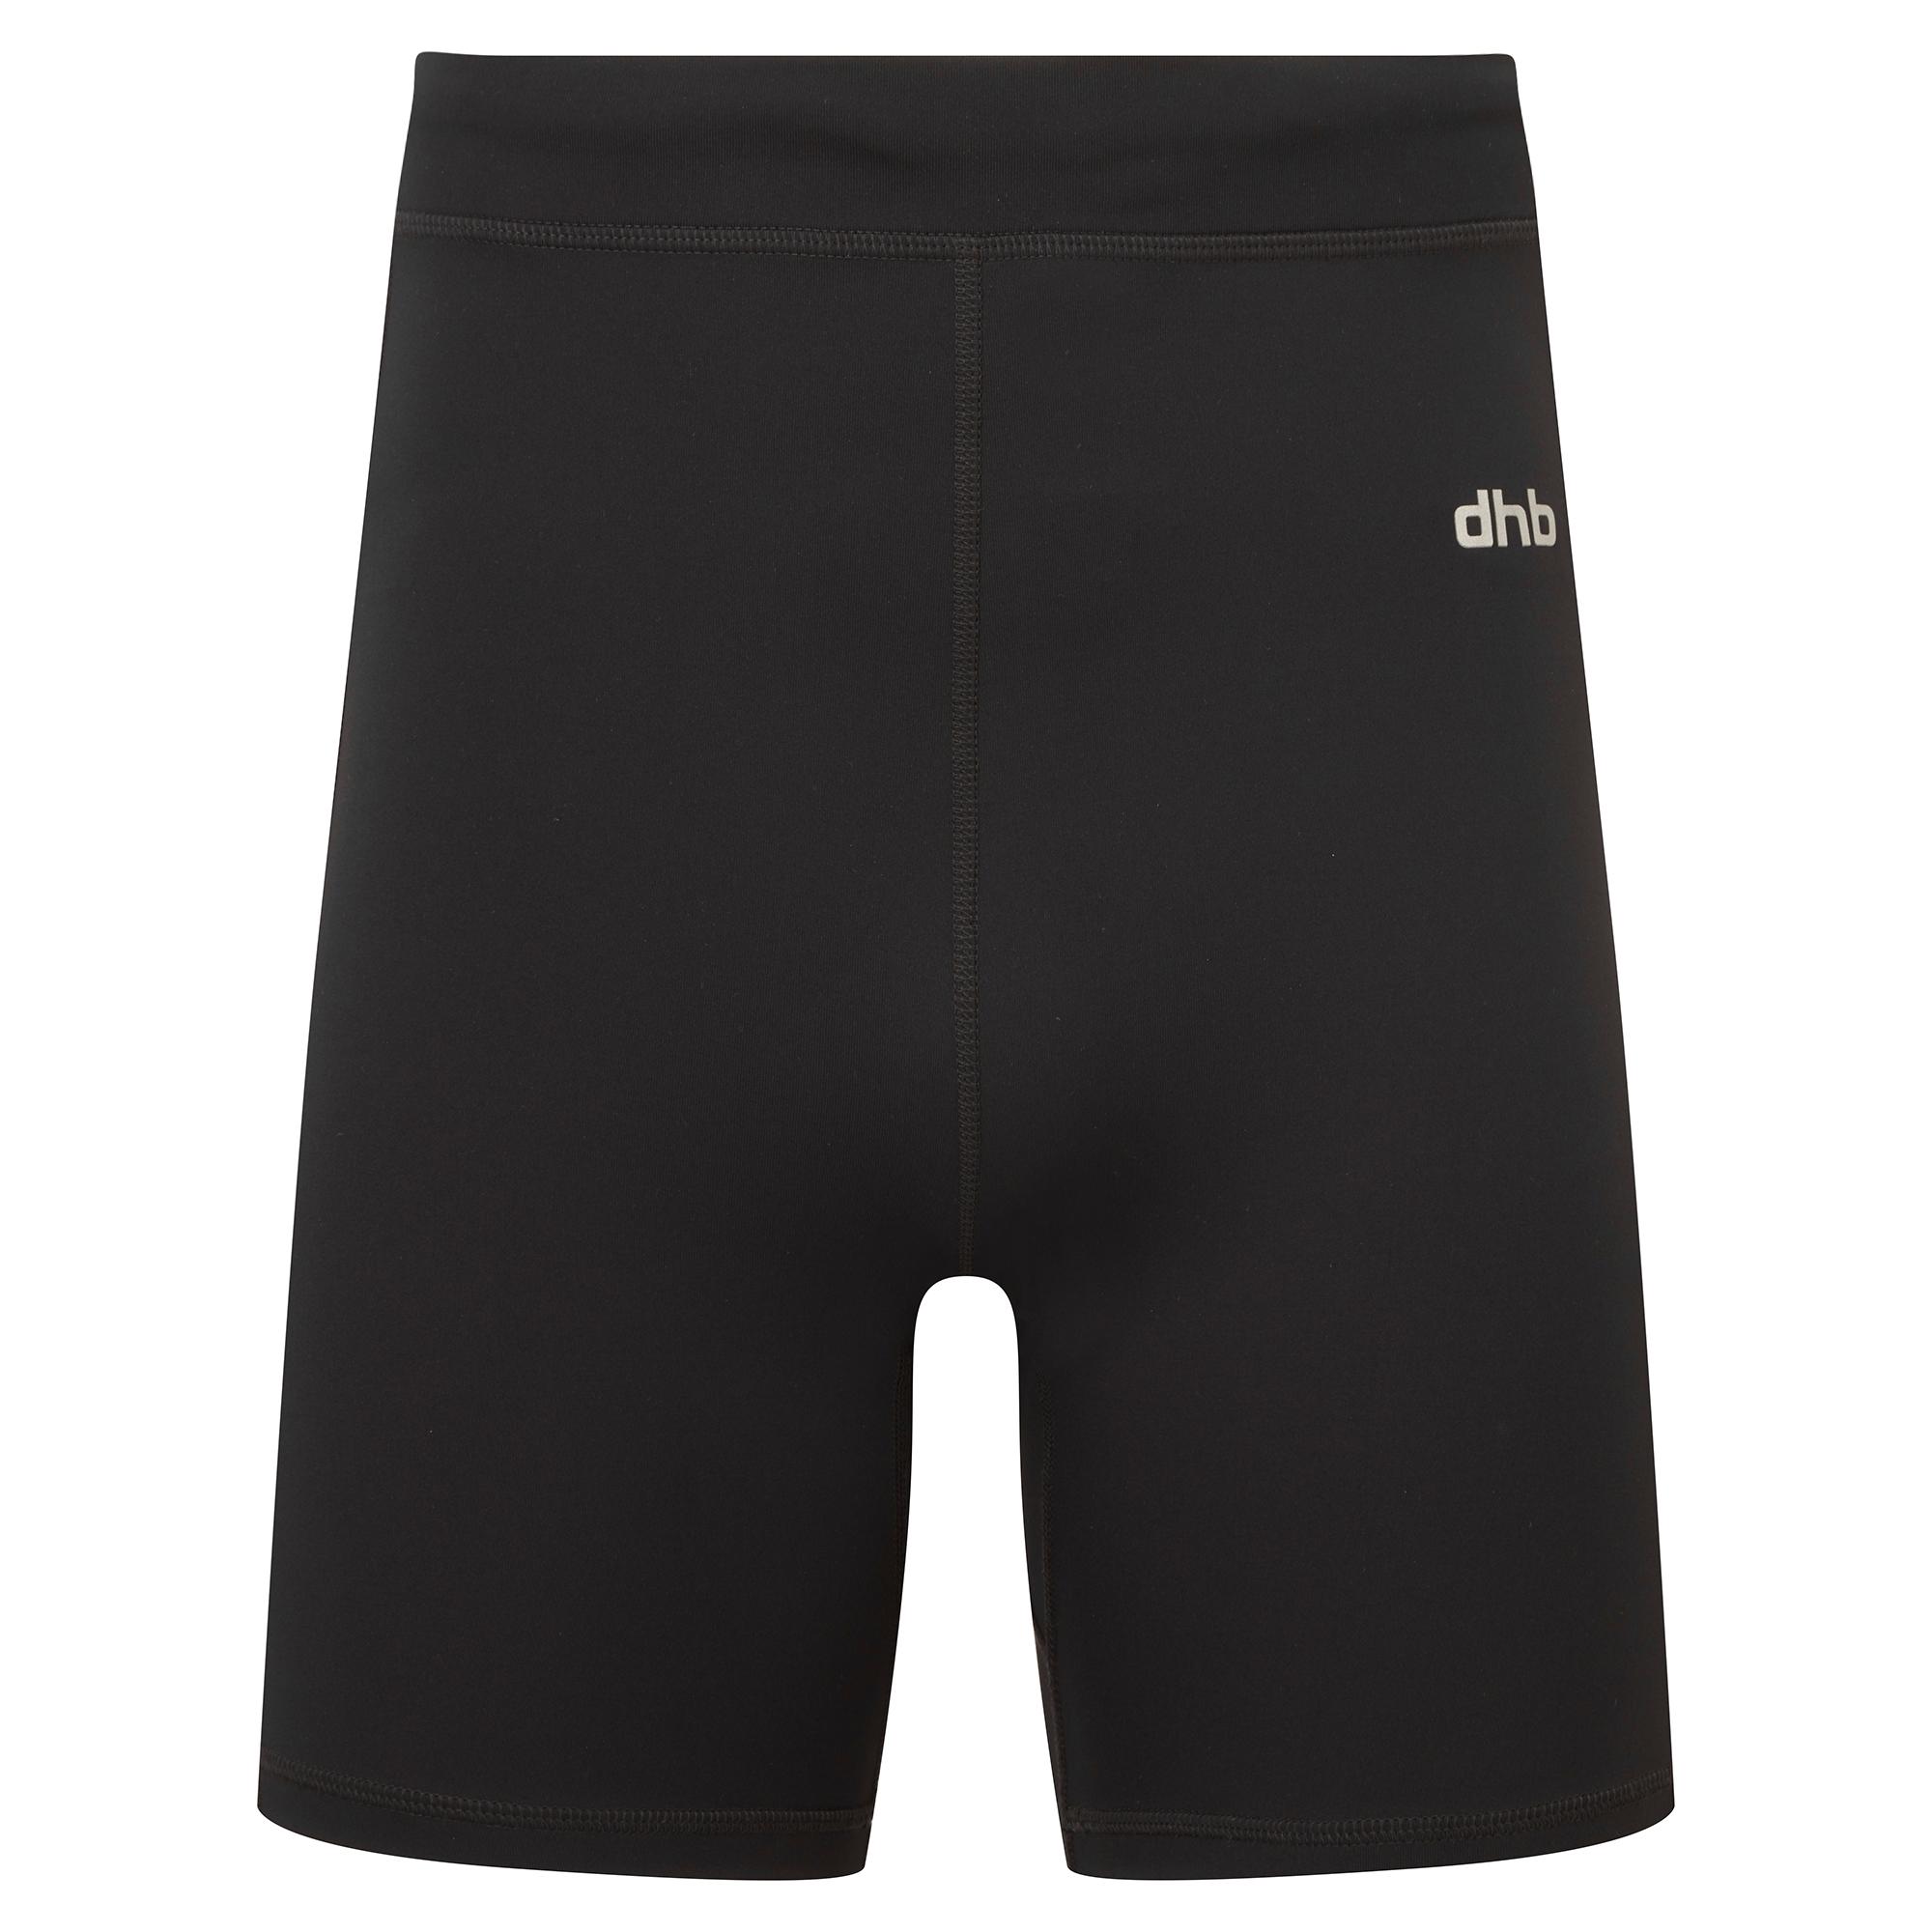 Dhb 7 Tight Run Shorts 2.0 - Black